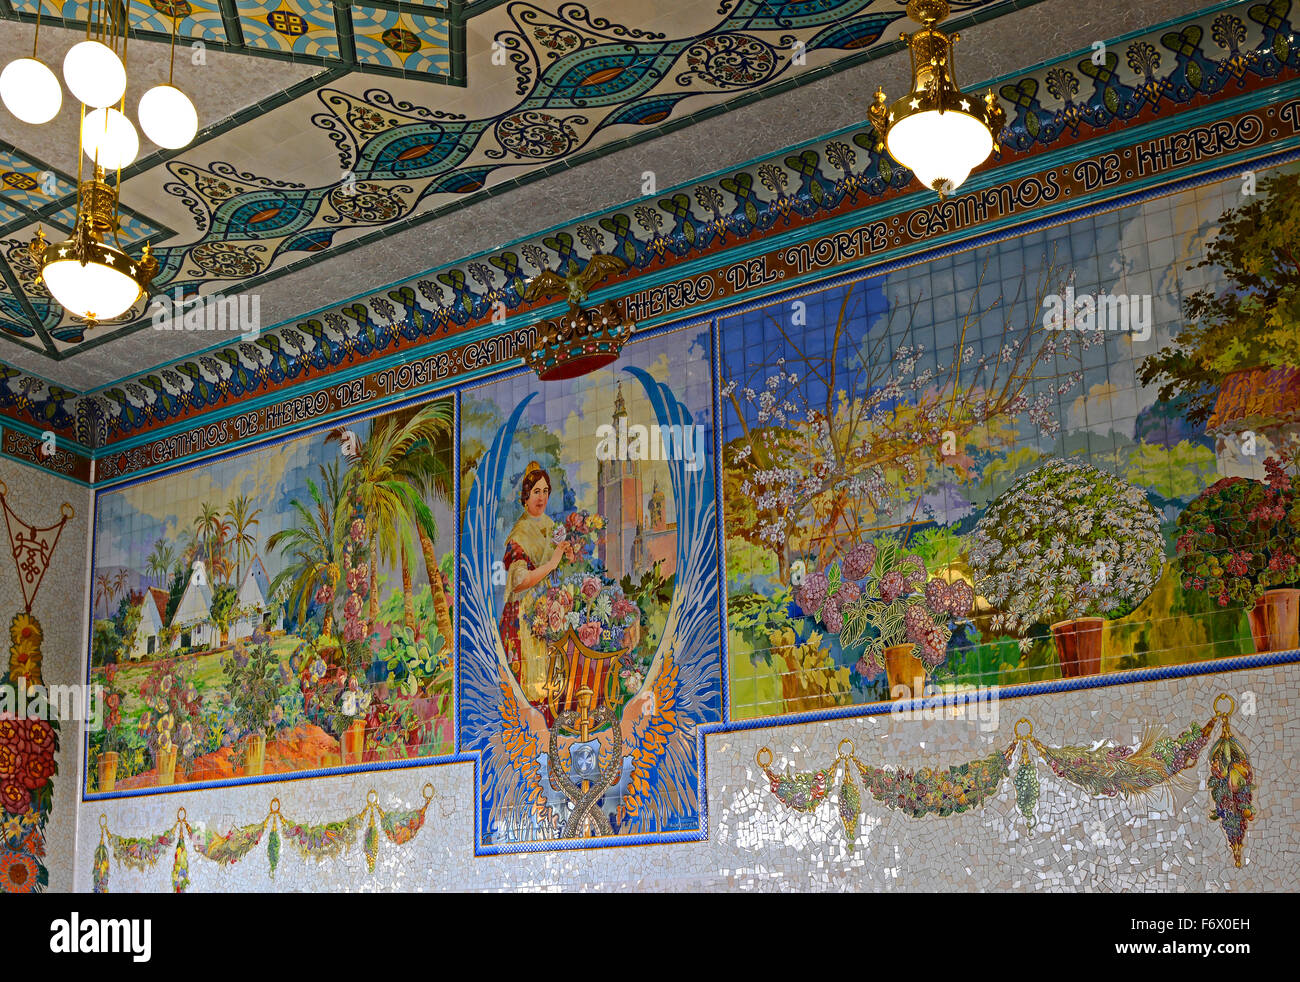 Fliesen Sie Mosaikbild der regionalen Flora im Inneren des Nordbahnhofs in Valencia, Spanien Stockfoto